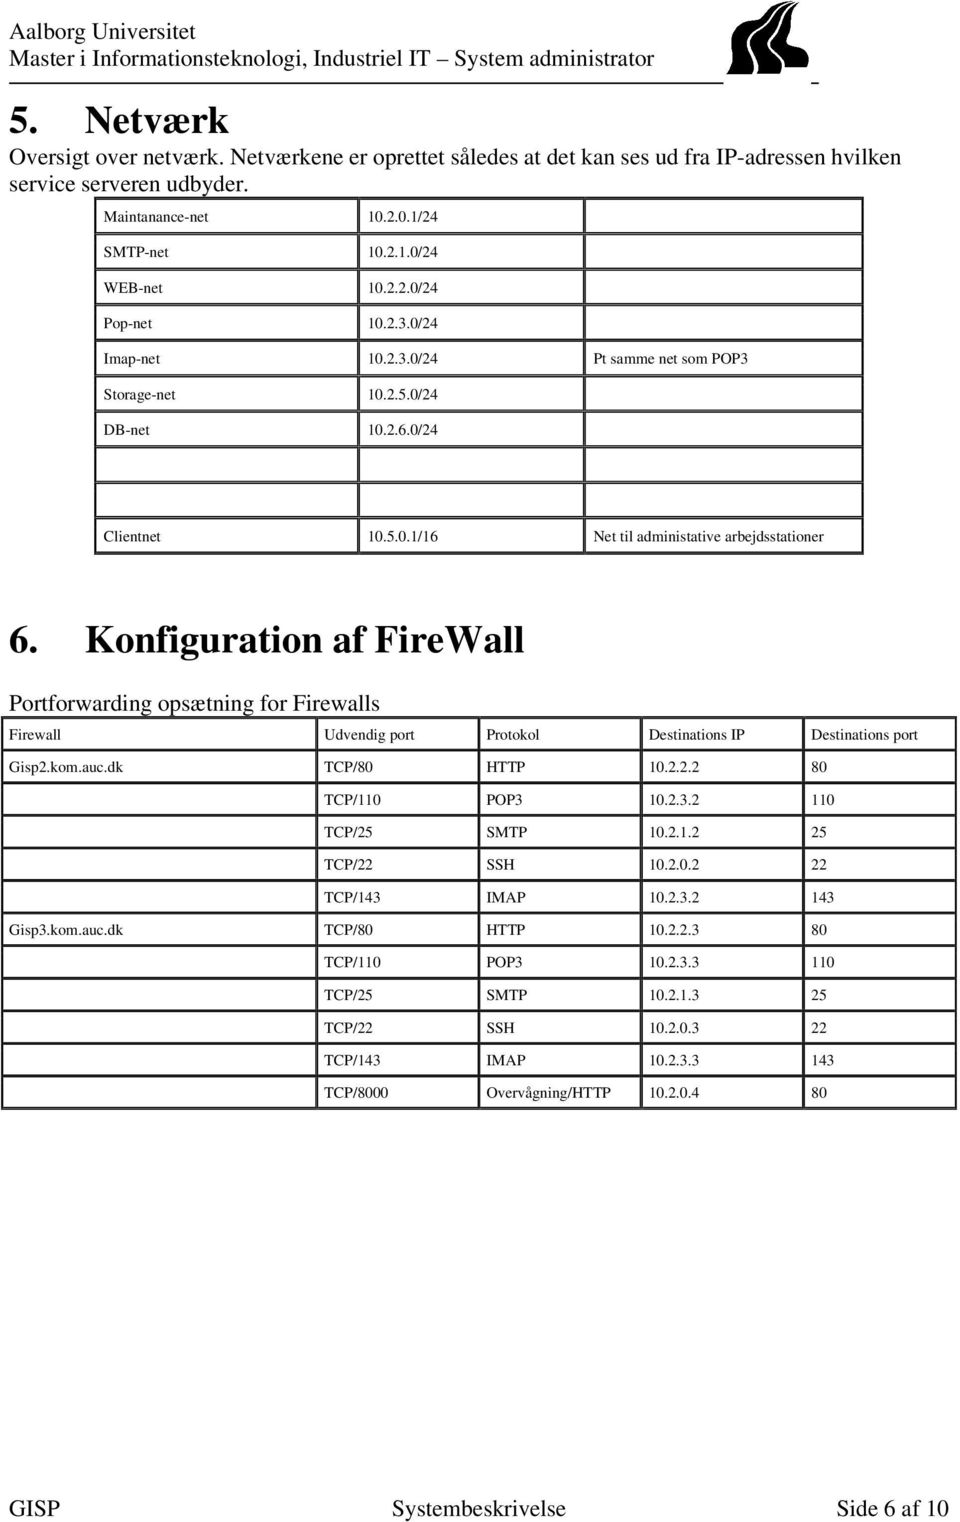 Konfiguration af FireWall Portforwarding opsæ tning for Firewalls Firewall Udvendig port Protokol Destinations IP Destinations port Gisp2.kom.auc.dk TCP/80 HTTP 10.2.2.2 80 TCP/110 POP3 